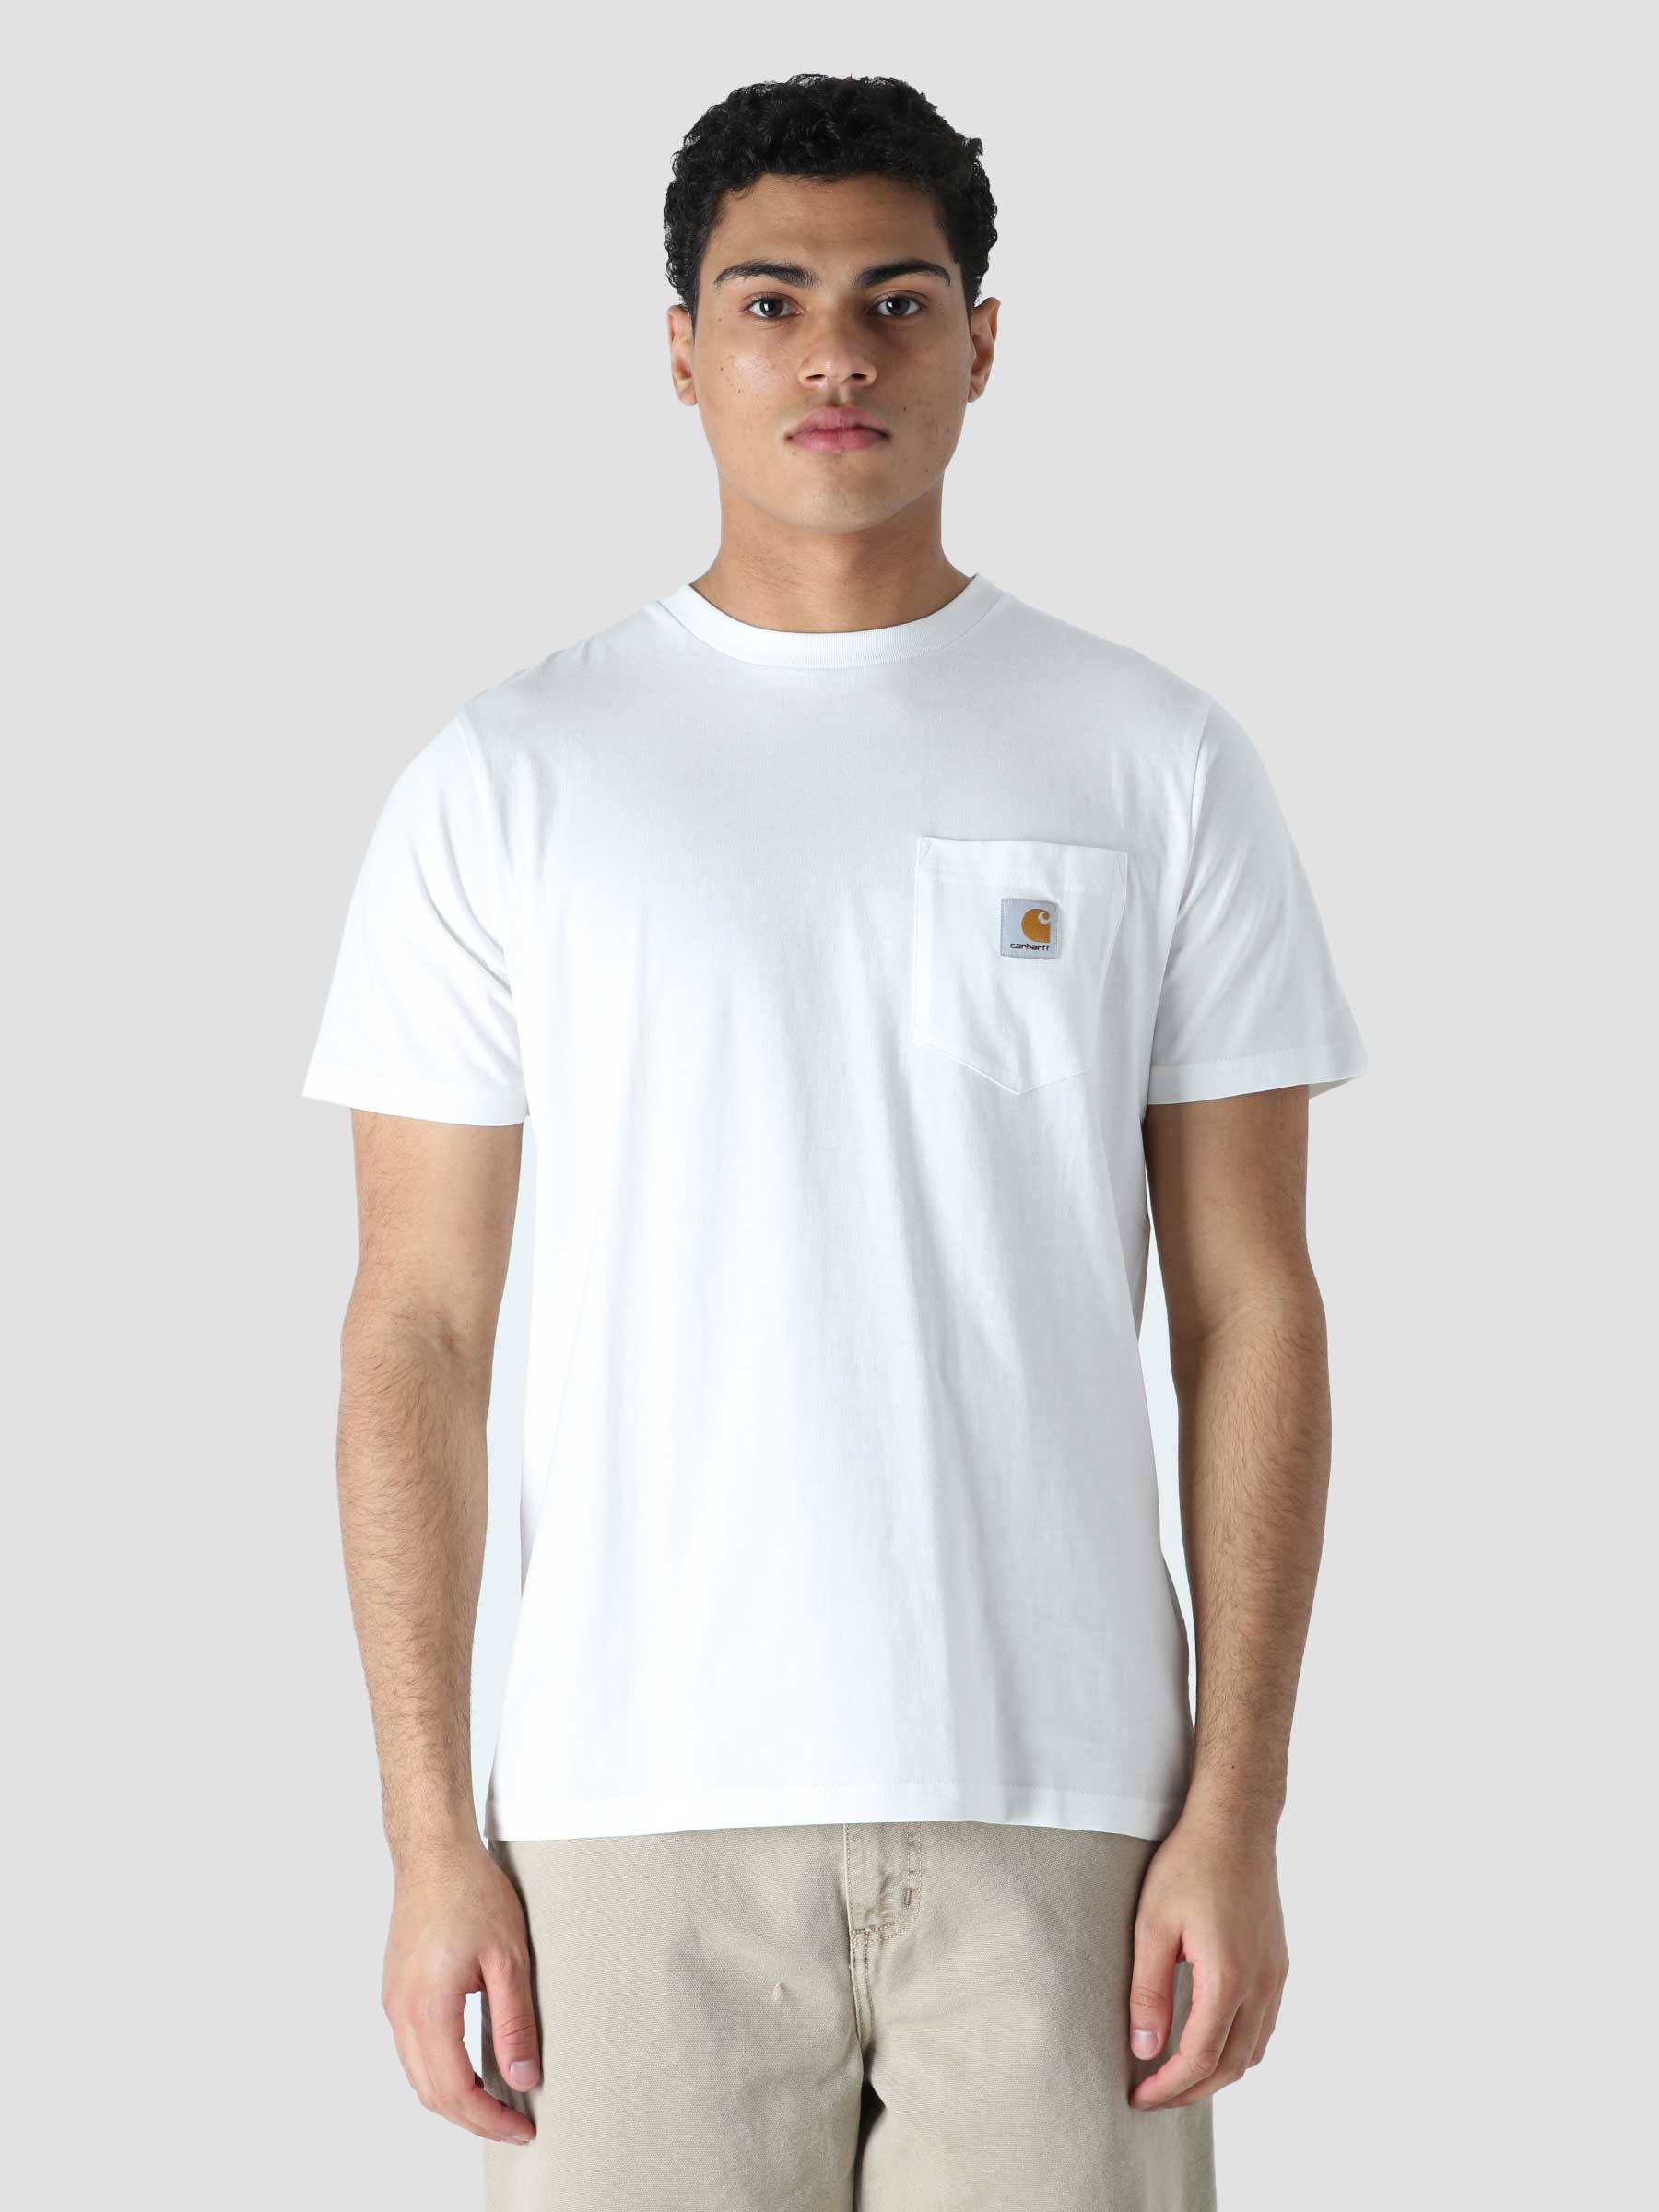 S/S Pocket T-Shirt White I022091-02XX